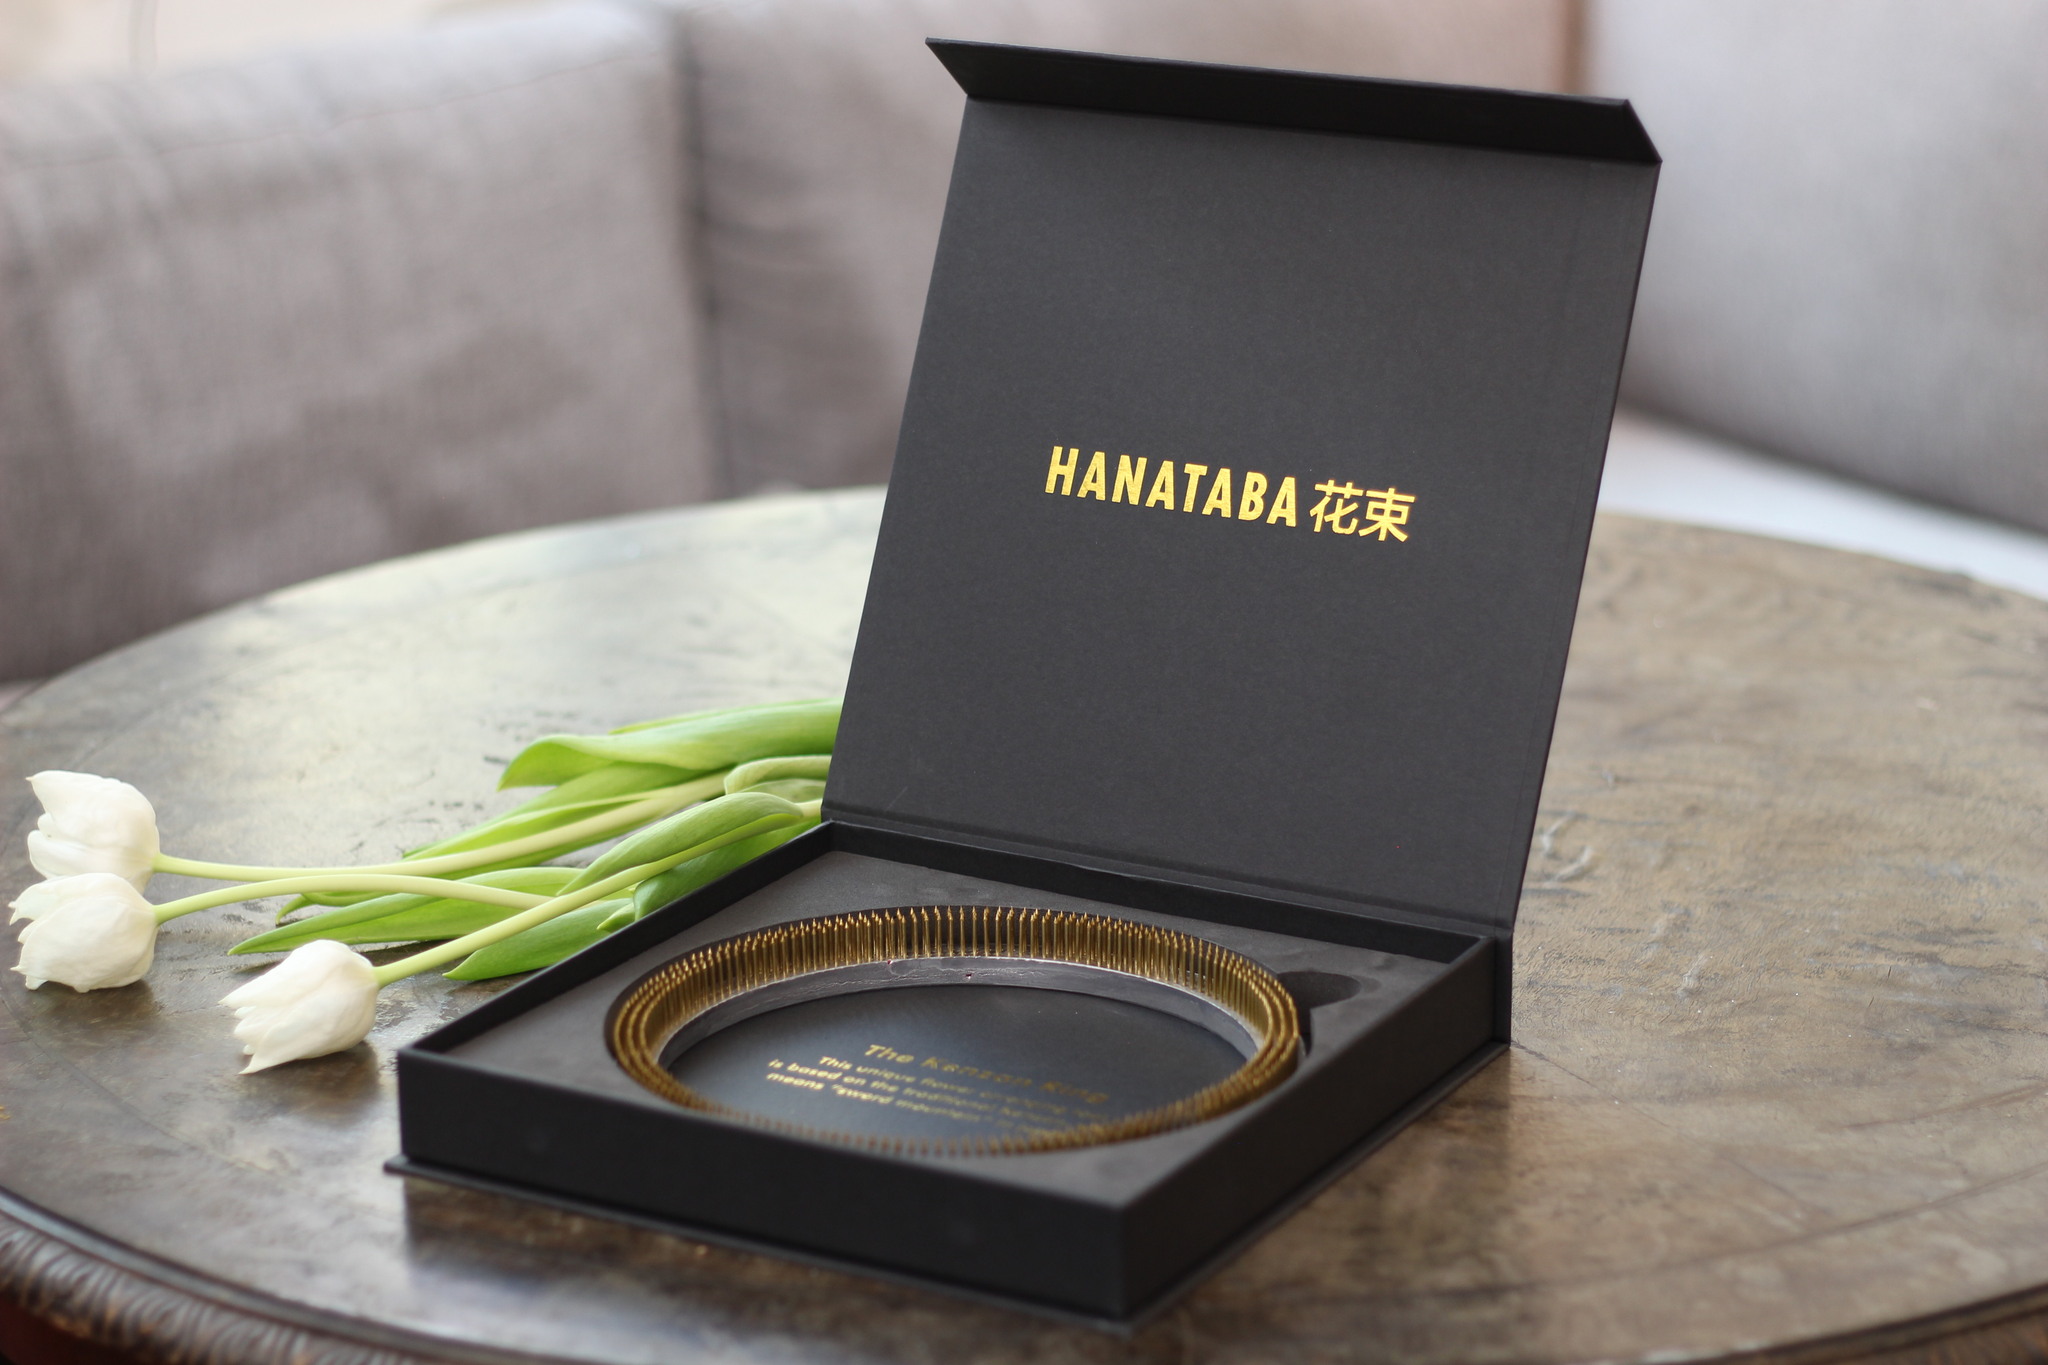 Hanataba - The Ring